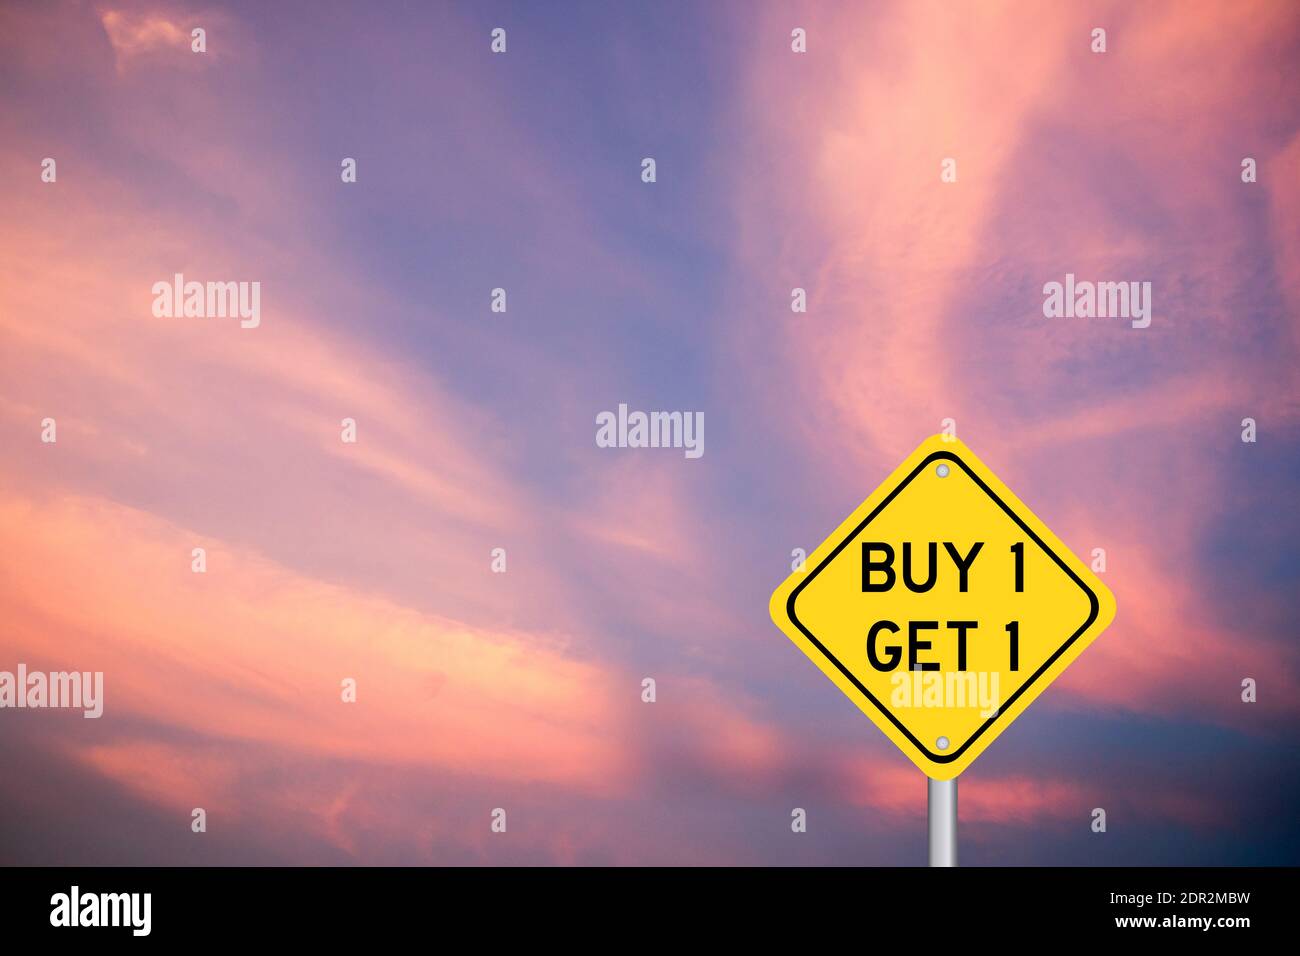 Gelbe Farbe Transport-Schild mit Wort kaufen 1 erhalten 1 Auf violettem Wolkenhimmel Hintergrund Stockfoto